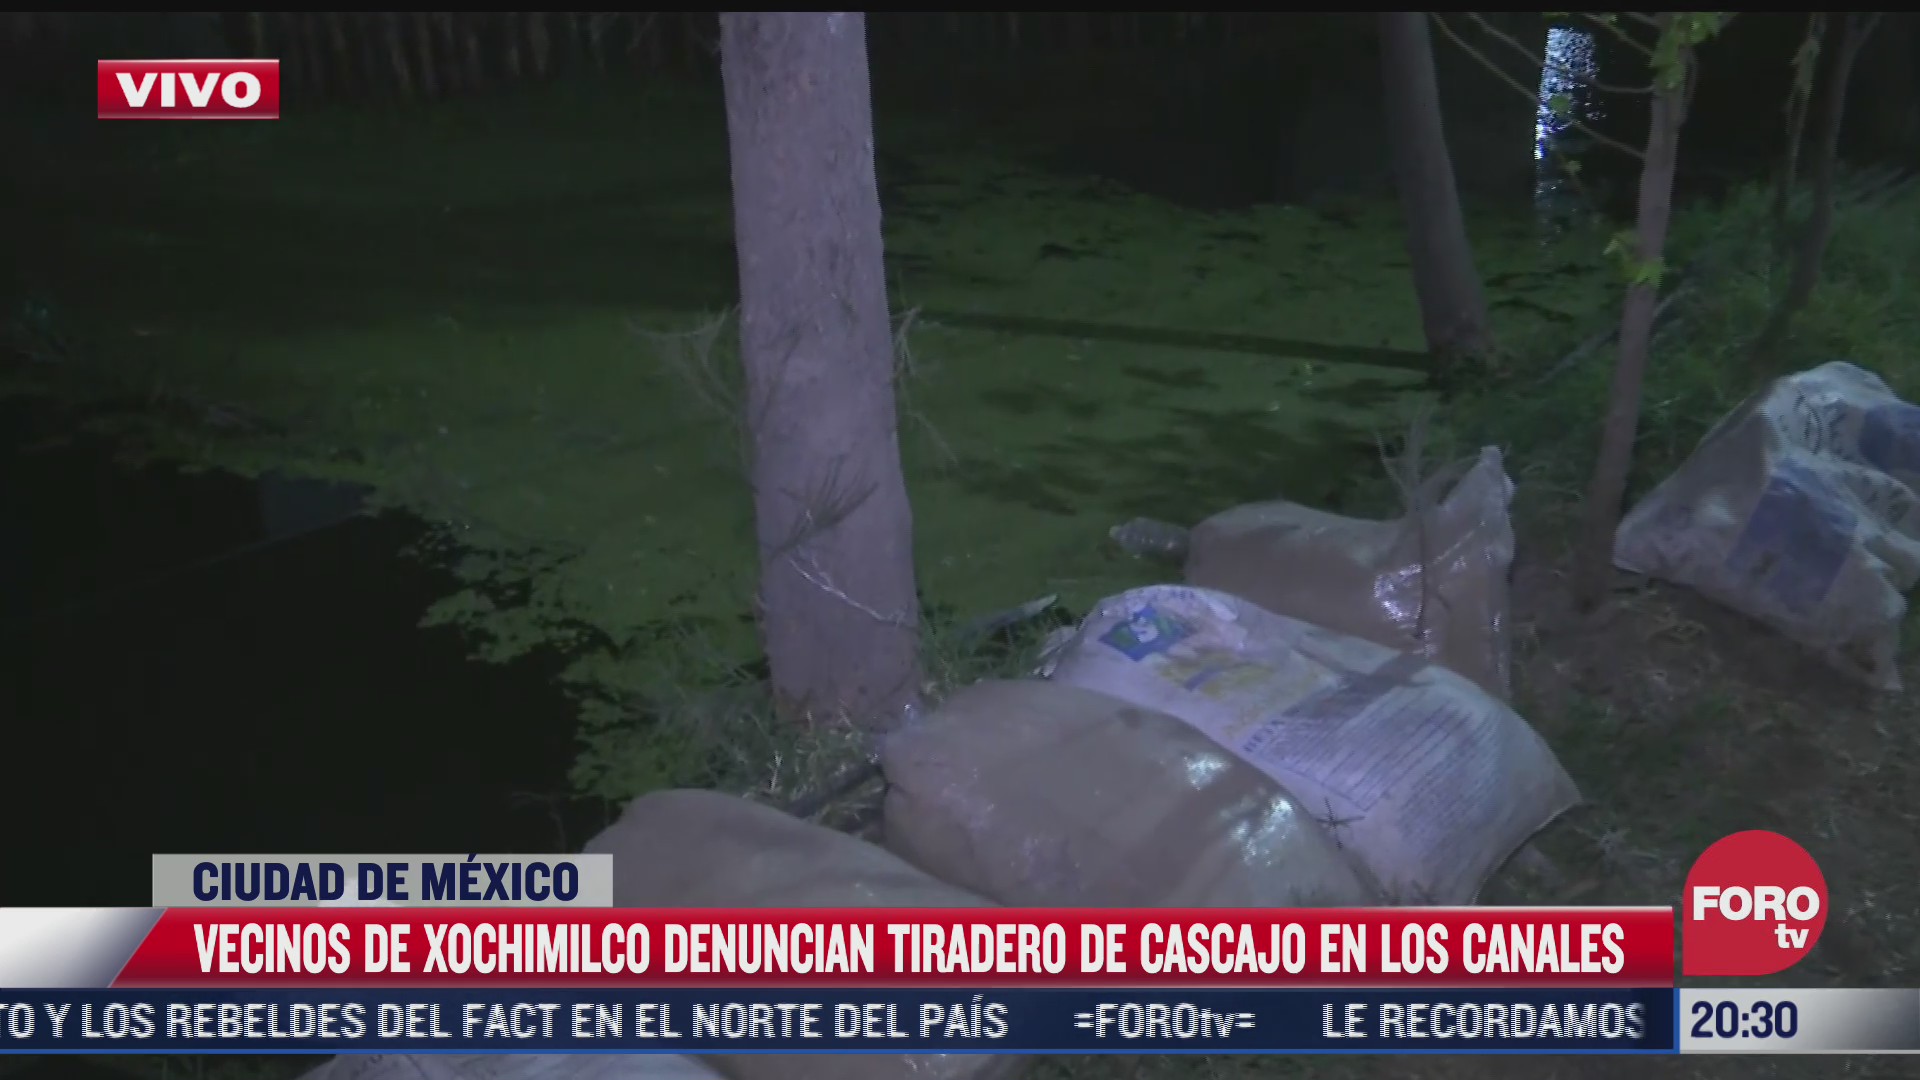 denuncian tiradero de cascajo en canales de xochimilco